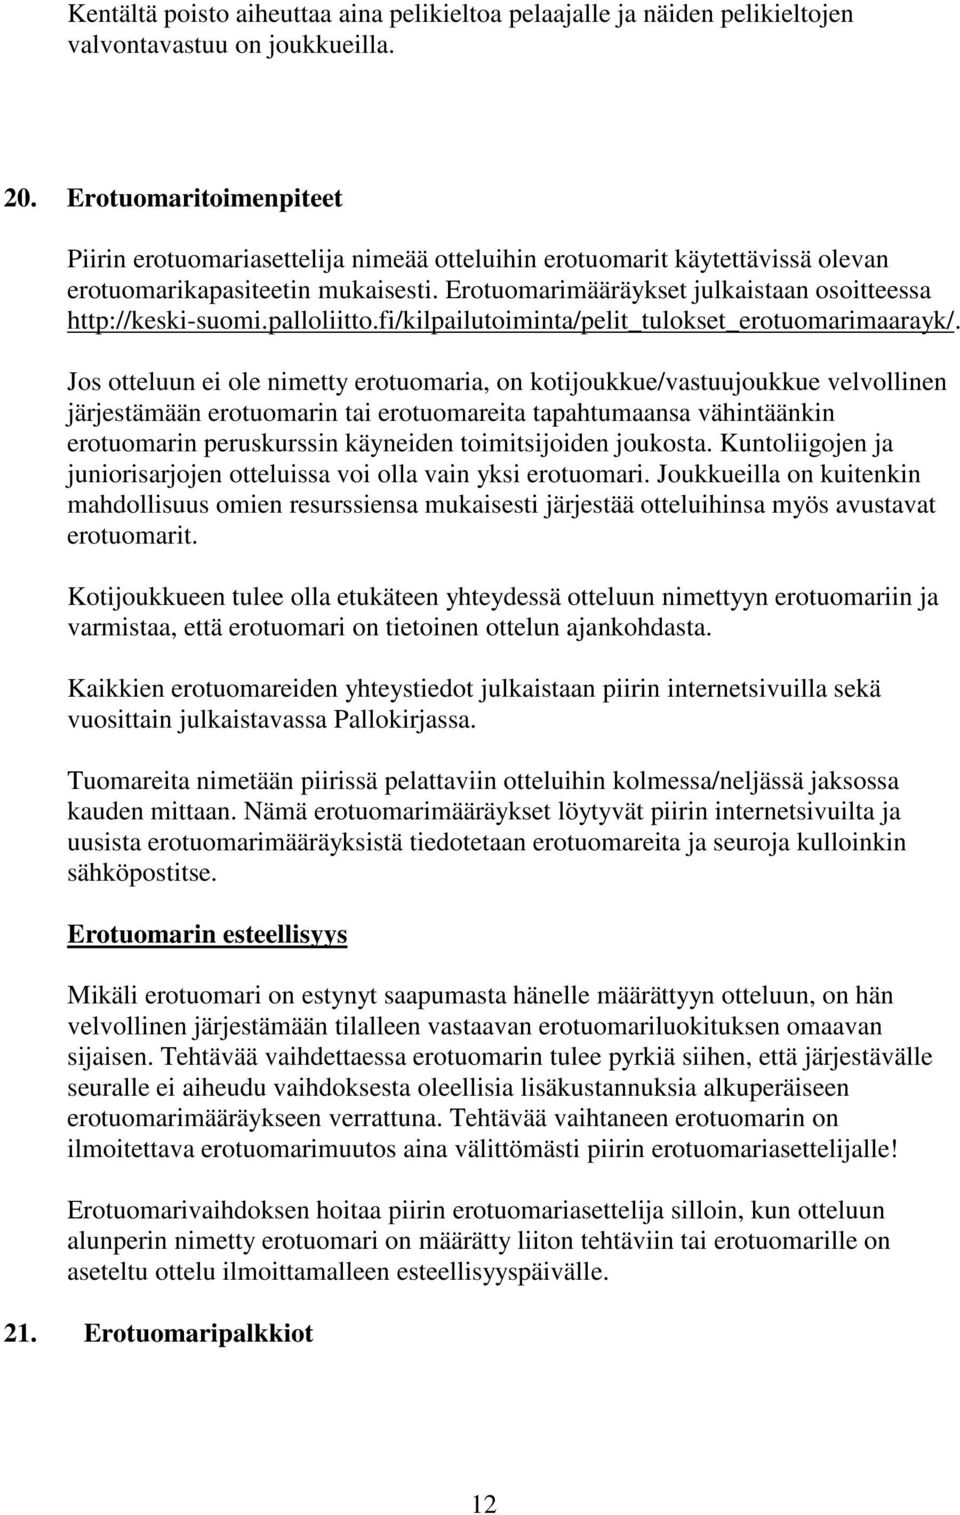 Erotuomarimääräykset julkaistaan osoitteessa http://keski-suomi.palloliitto.fi/kilpailutoiminta/pelit_tulokset_erotuomarimaarayk/.